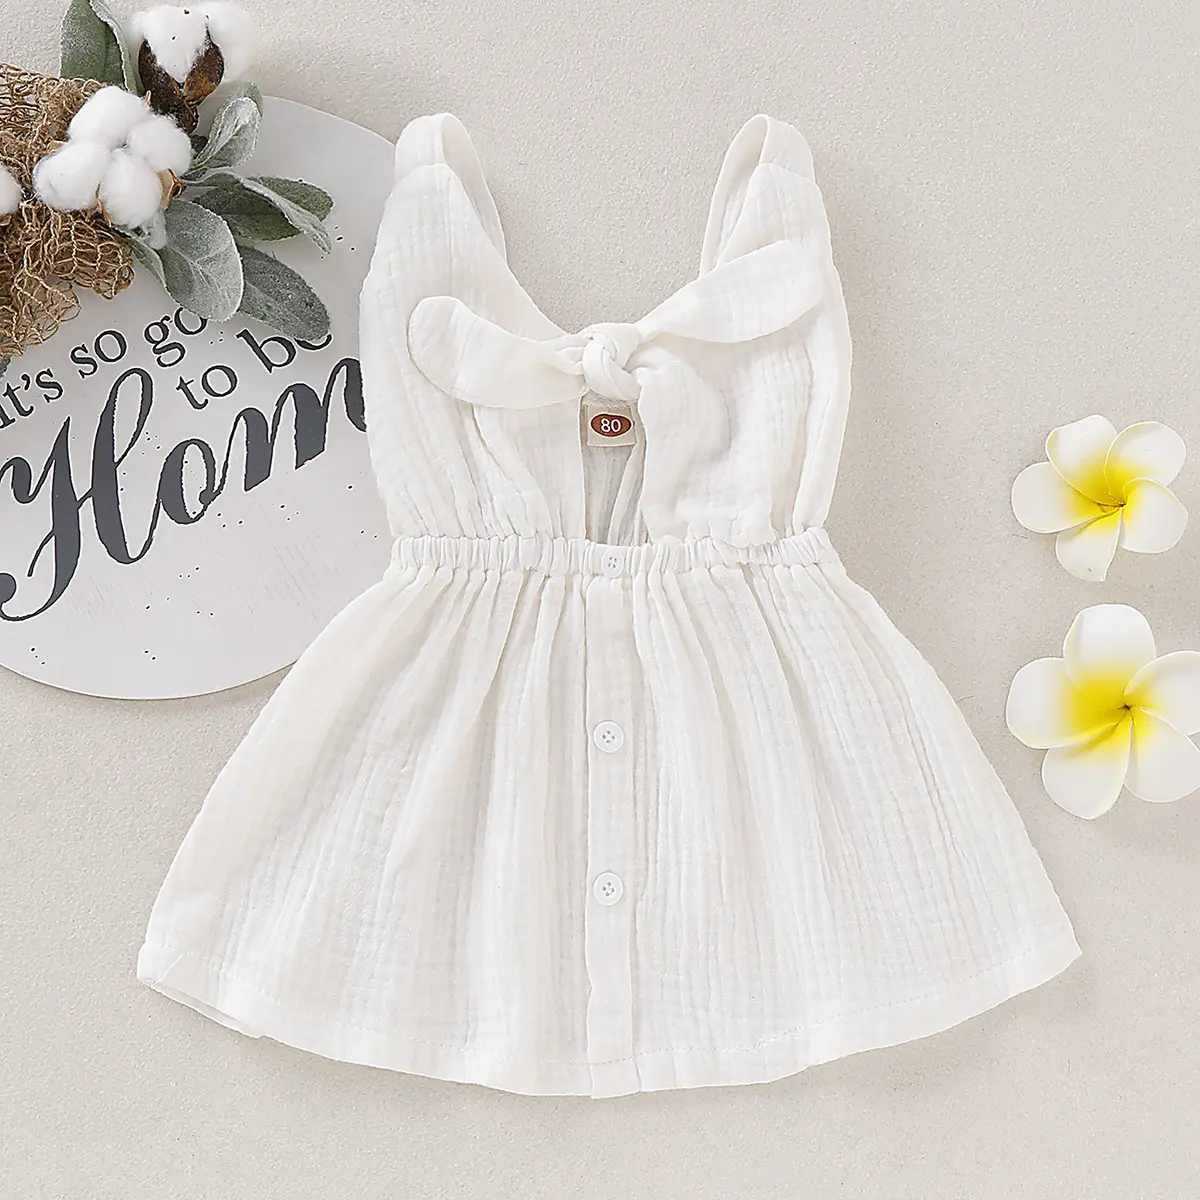 화이트 주름 직물 아기 옷 소녀 스커트 아기 소녀 슬리브 드레스 일반 컬러 프릴 아기 면화 드레스